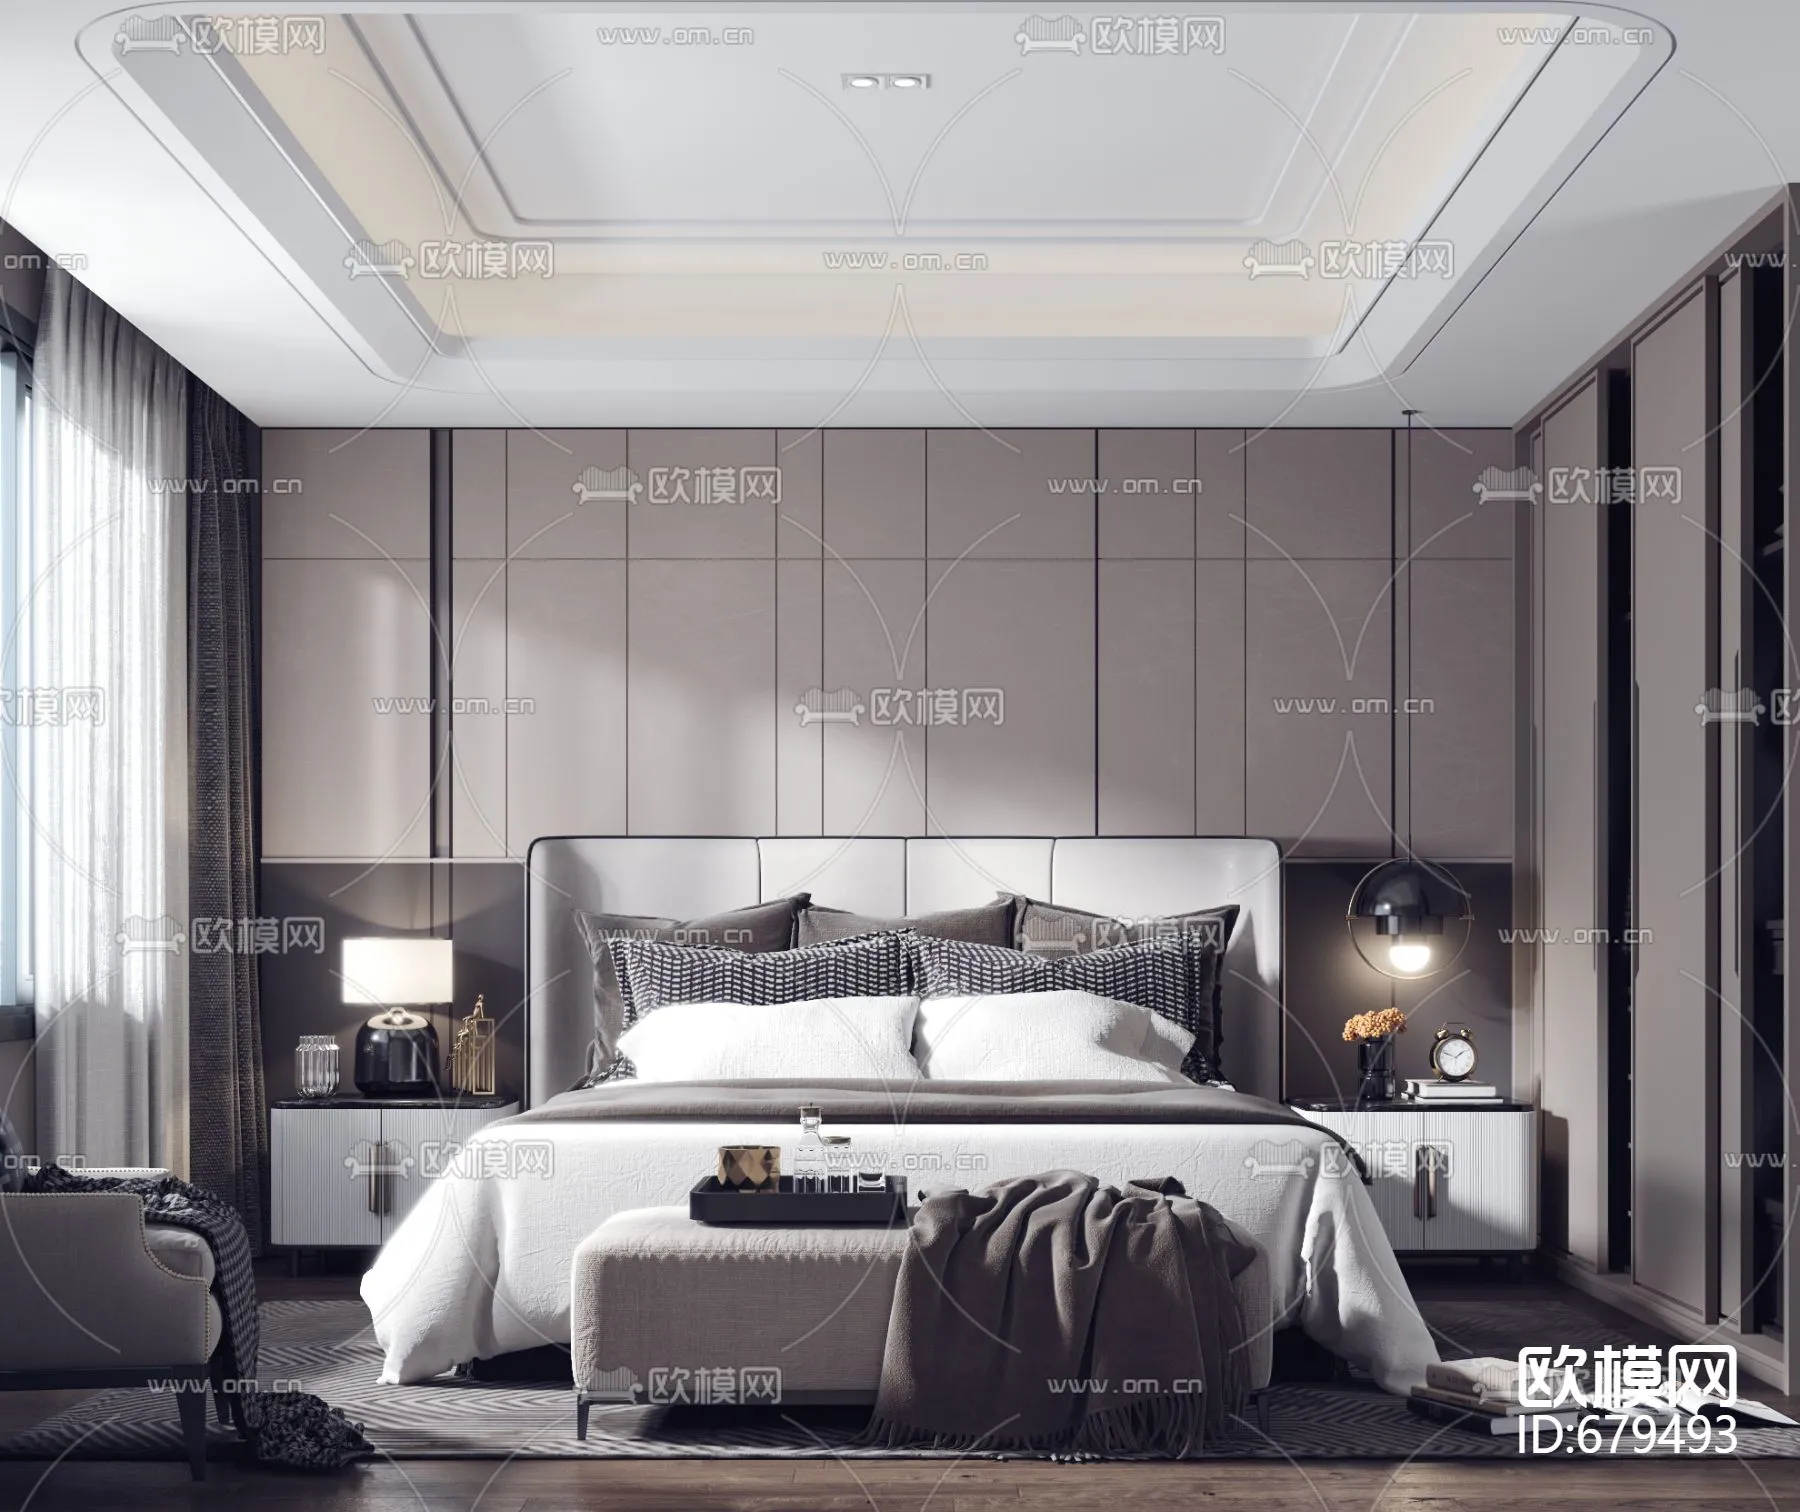 Bedroom 3D Scenes – 0211